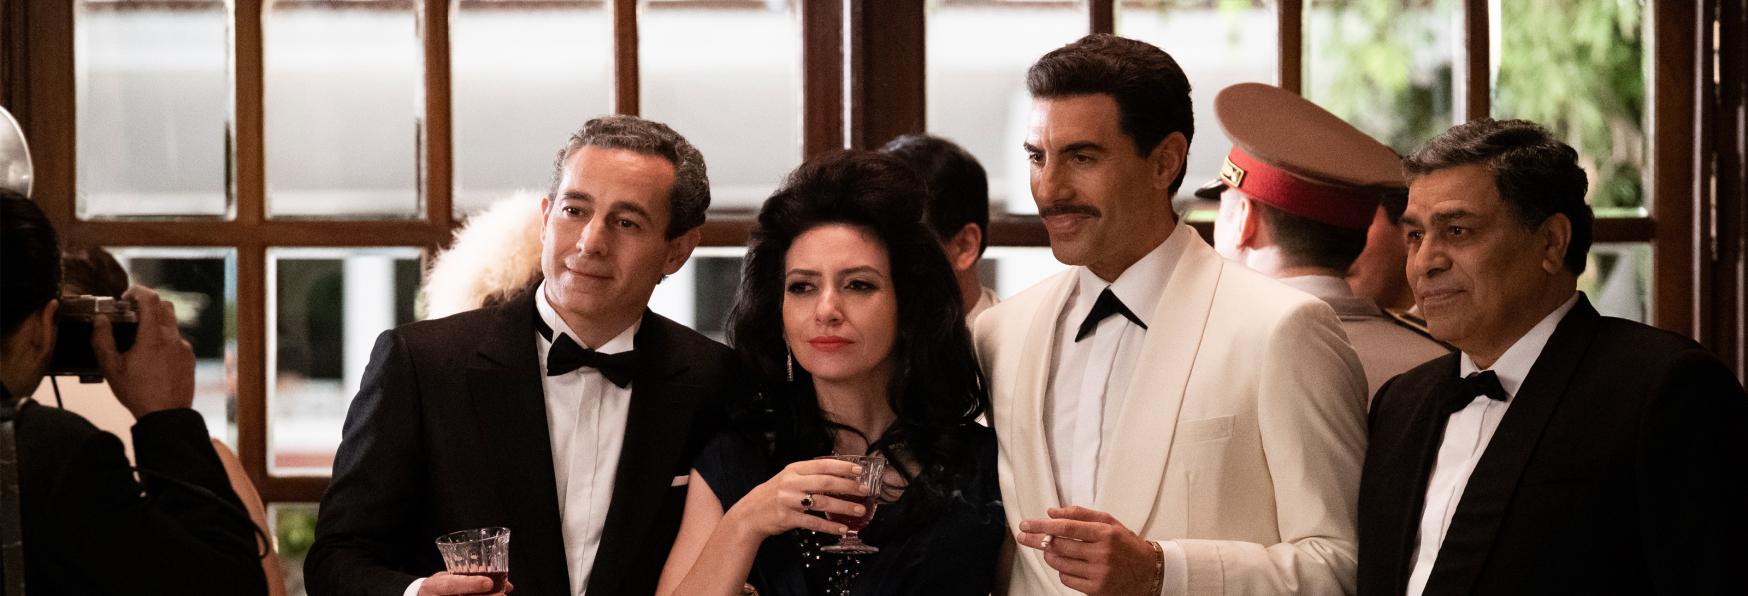 The Spy: rilasciato il Trailer della nuova Serie TV Netflix con Sacha Baron Cohen